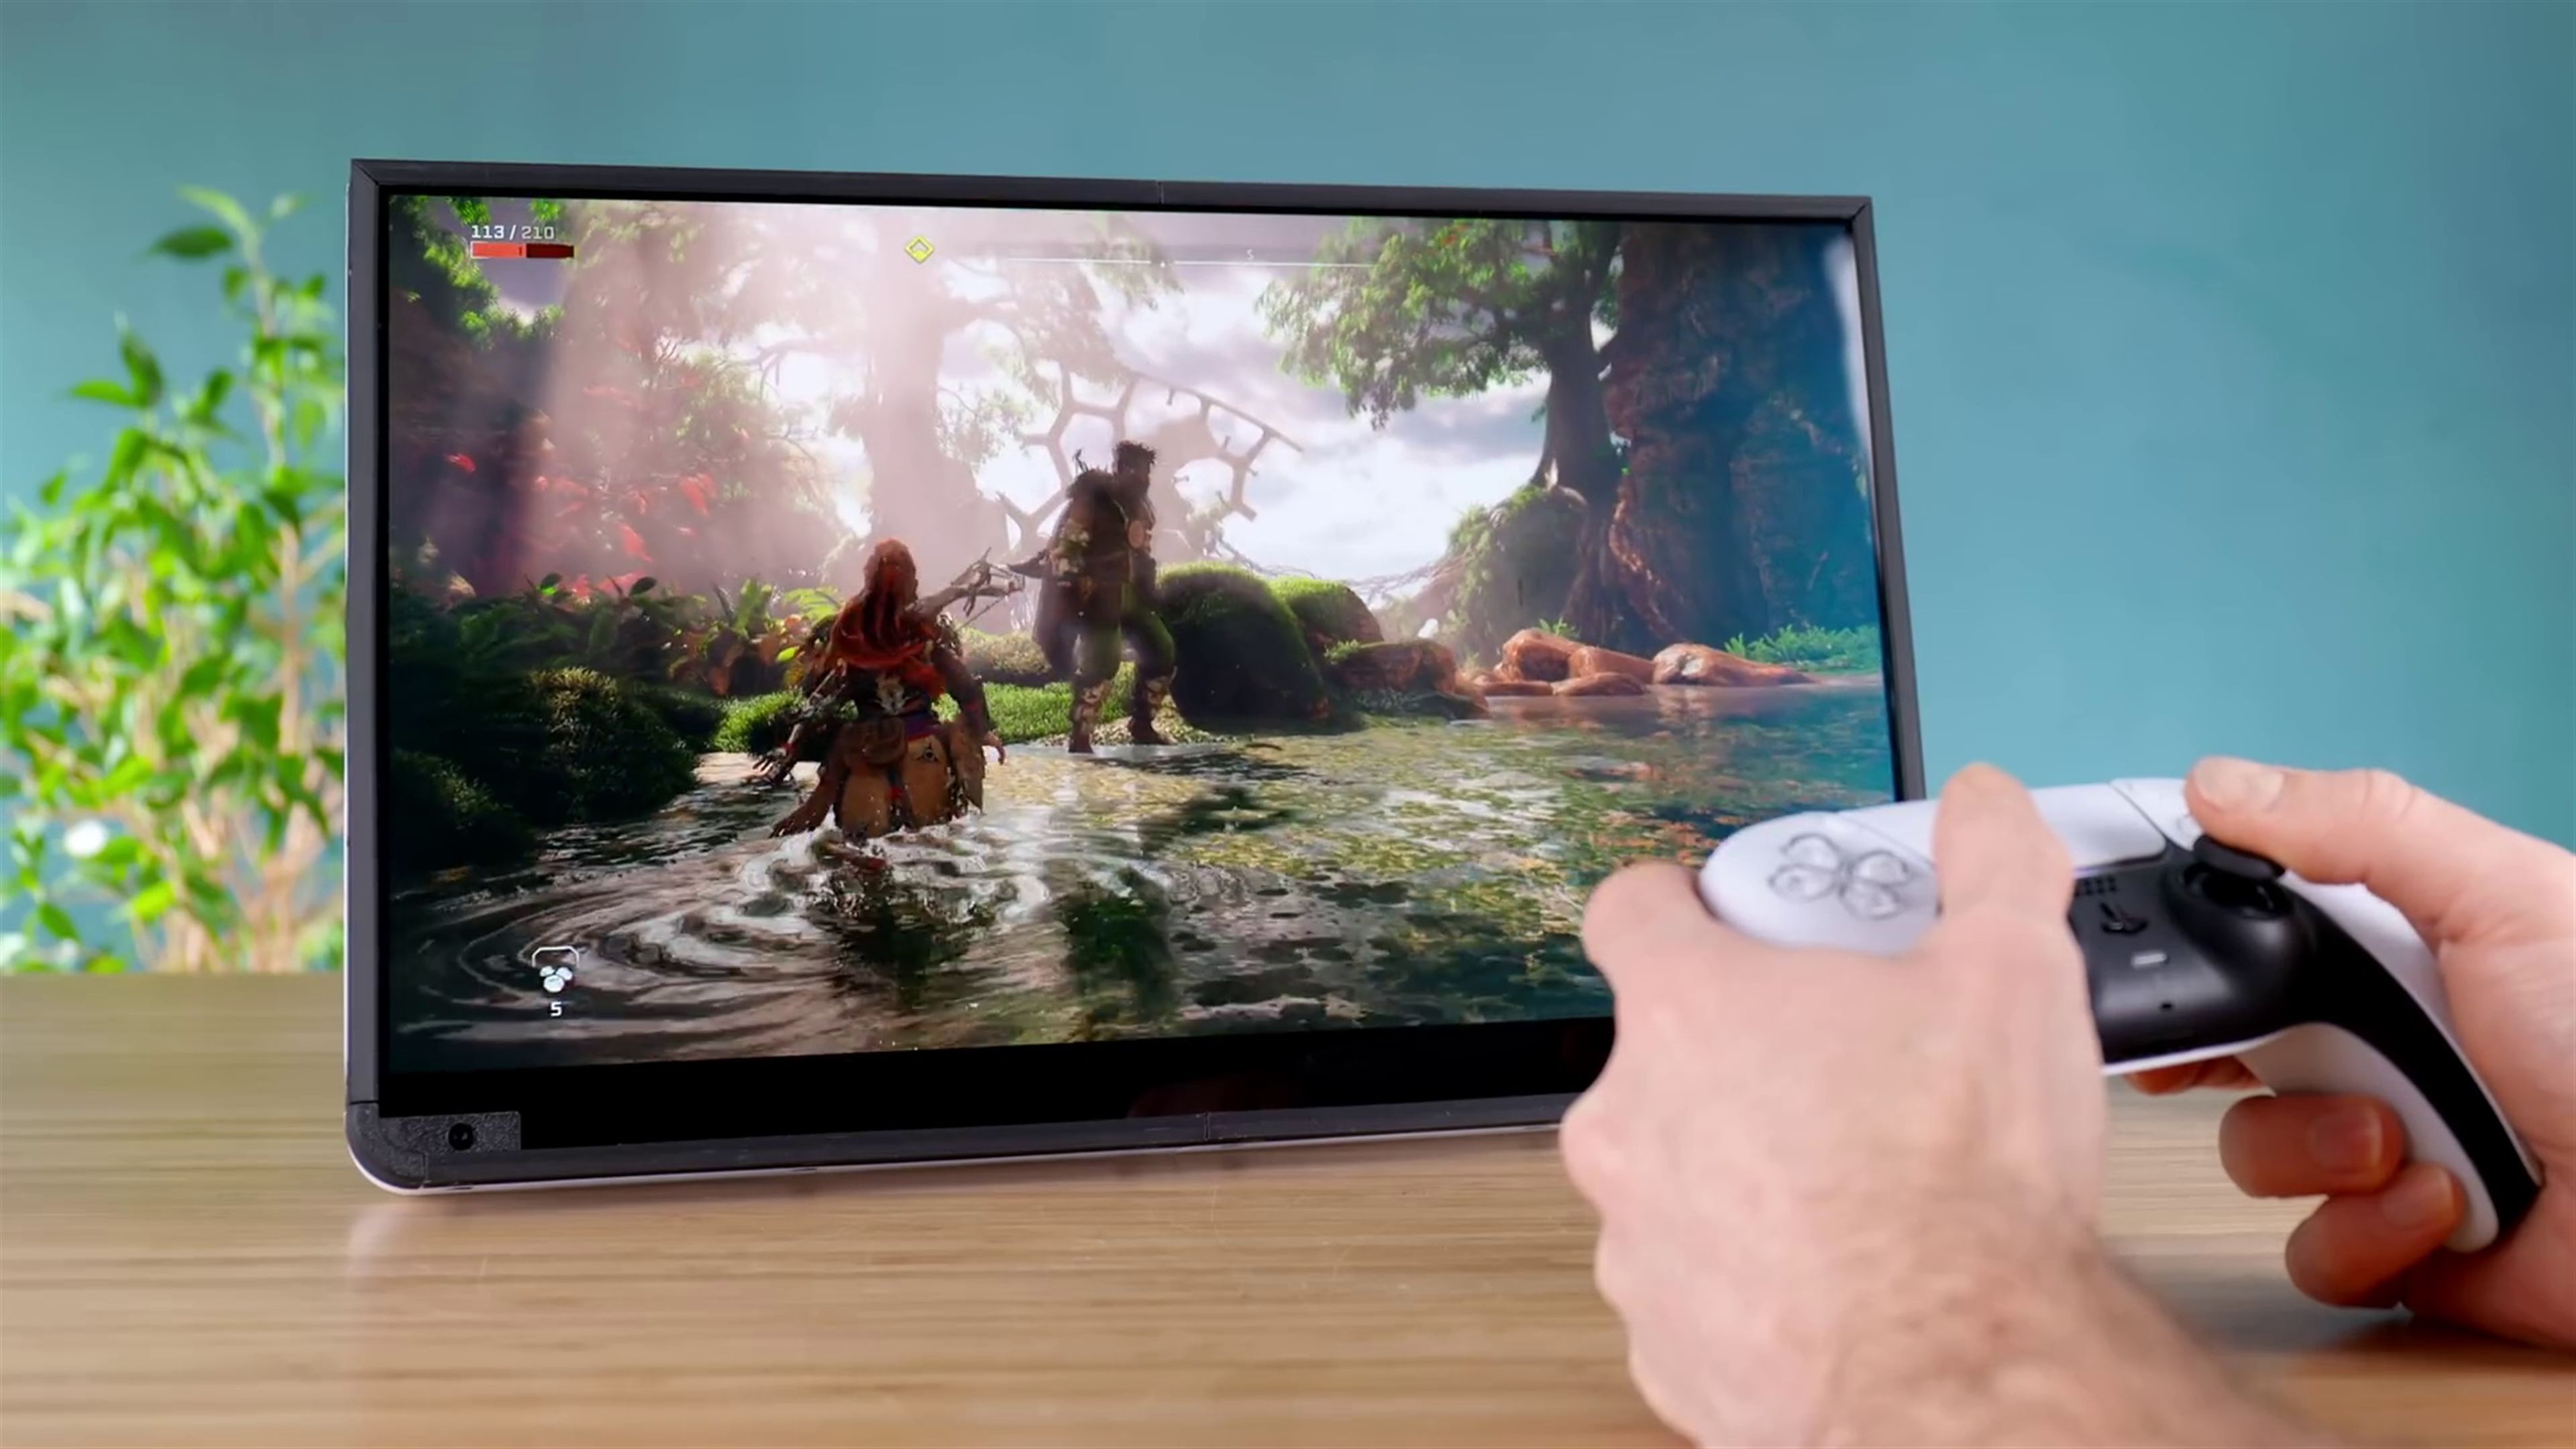  Youtuber DIY Perks convierte PS5 en una tablet